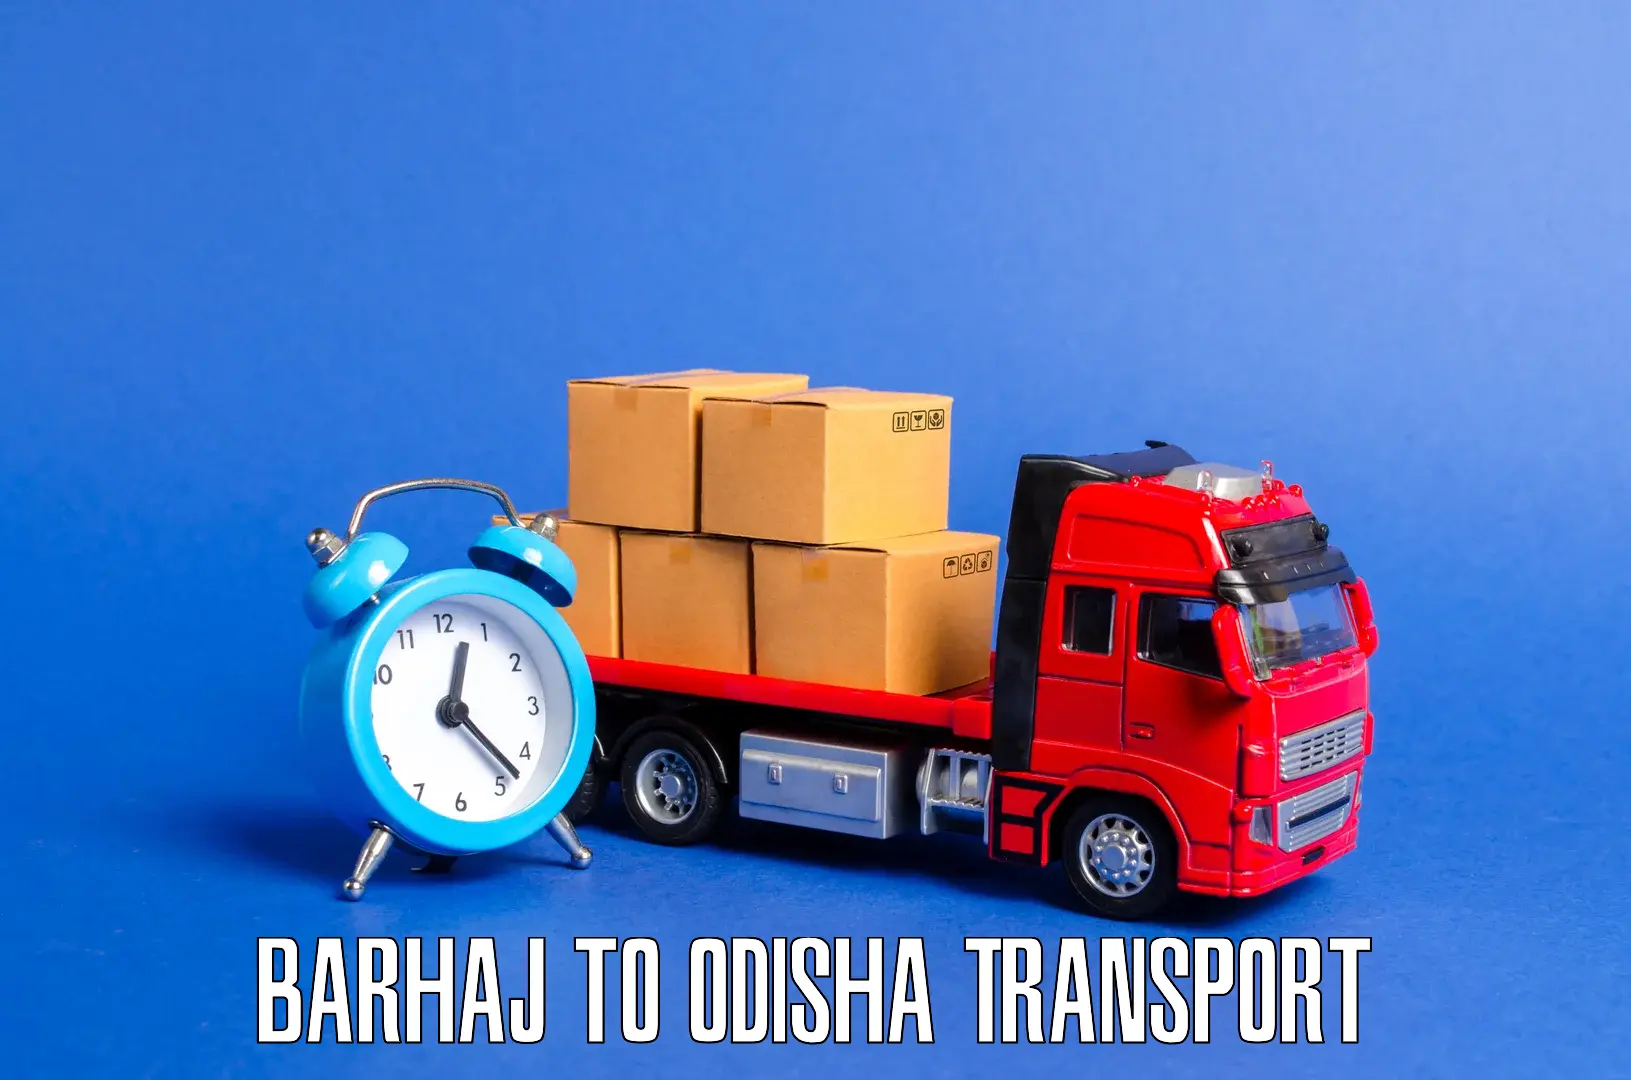 Express transport services Barhaj to Mathili